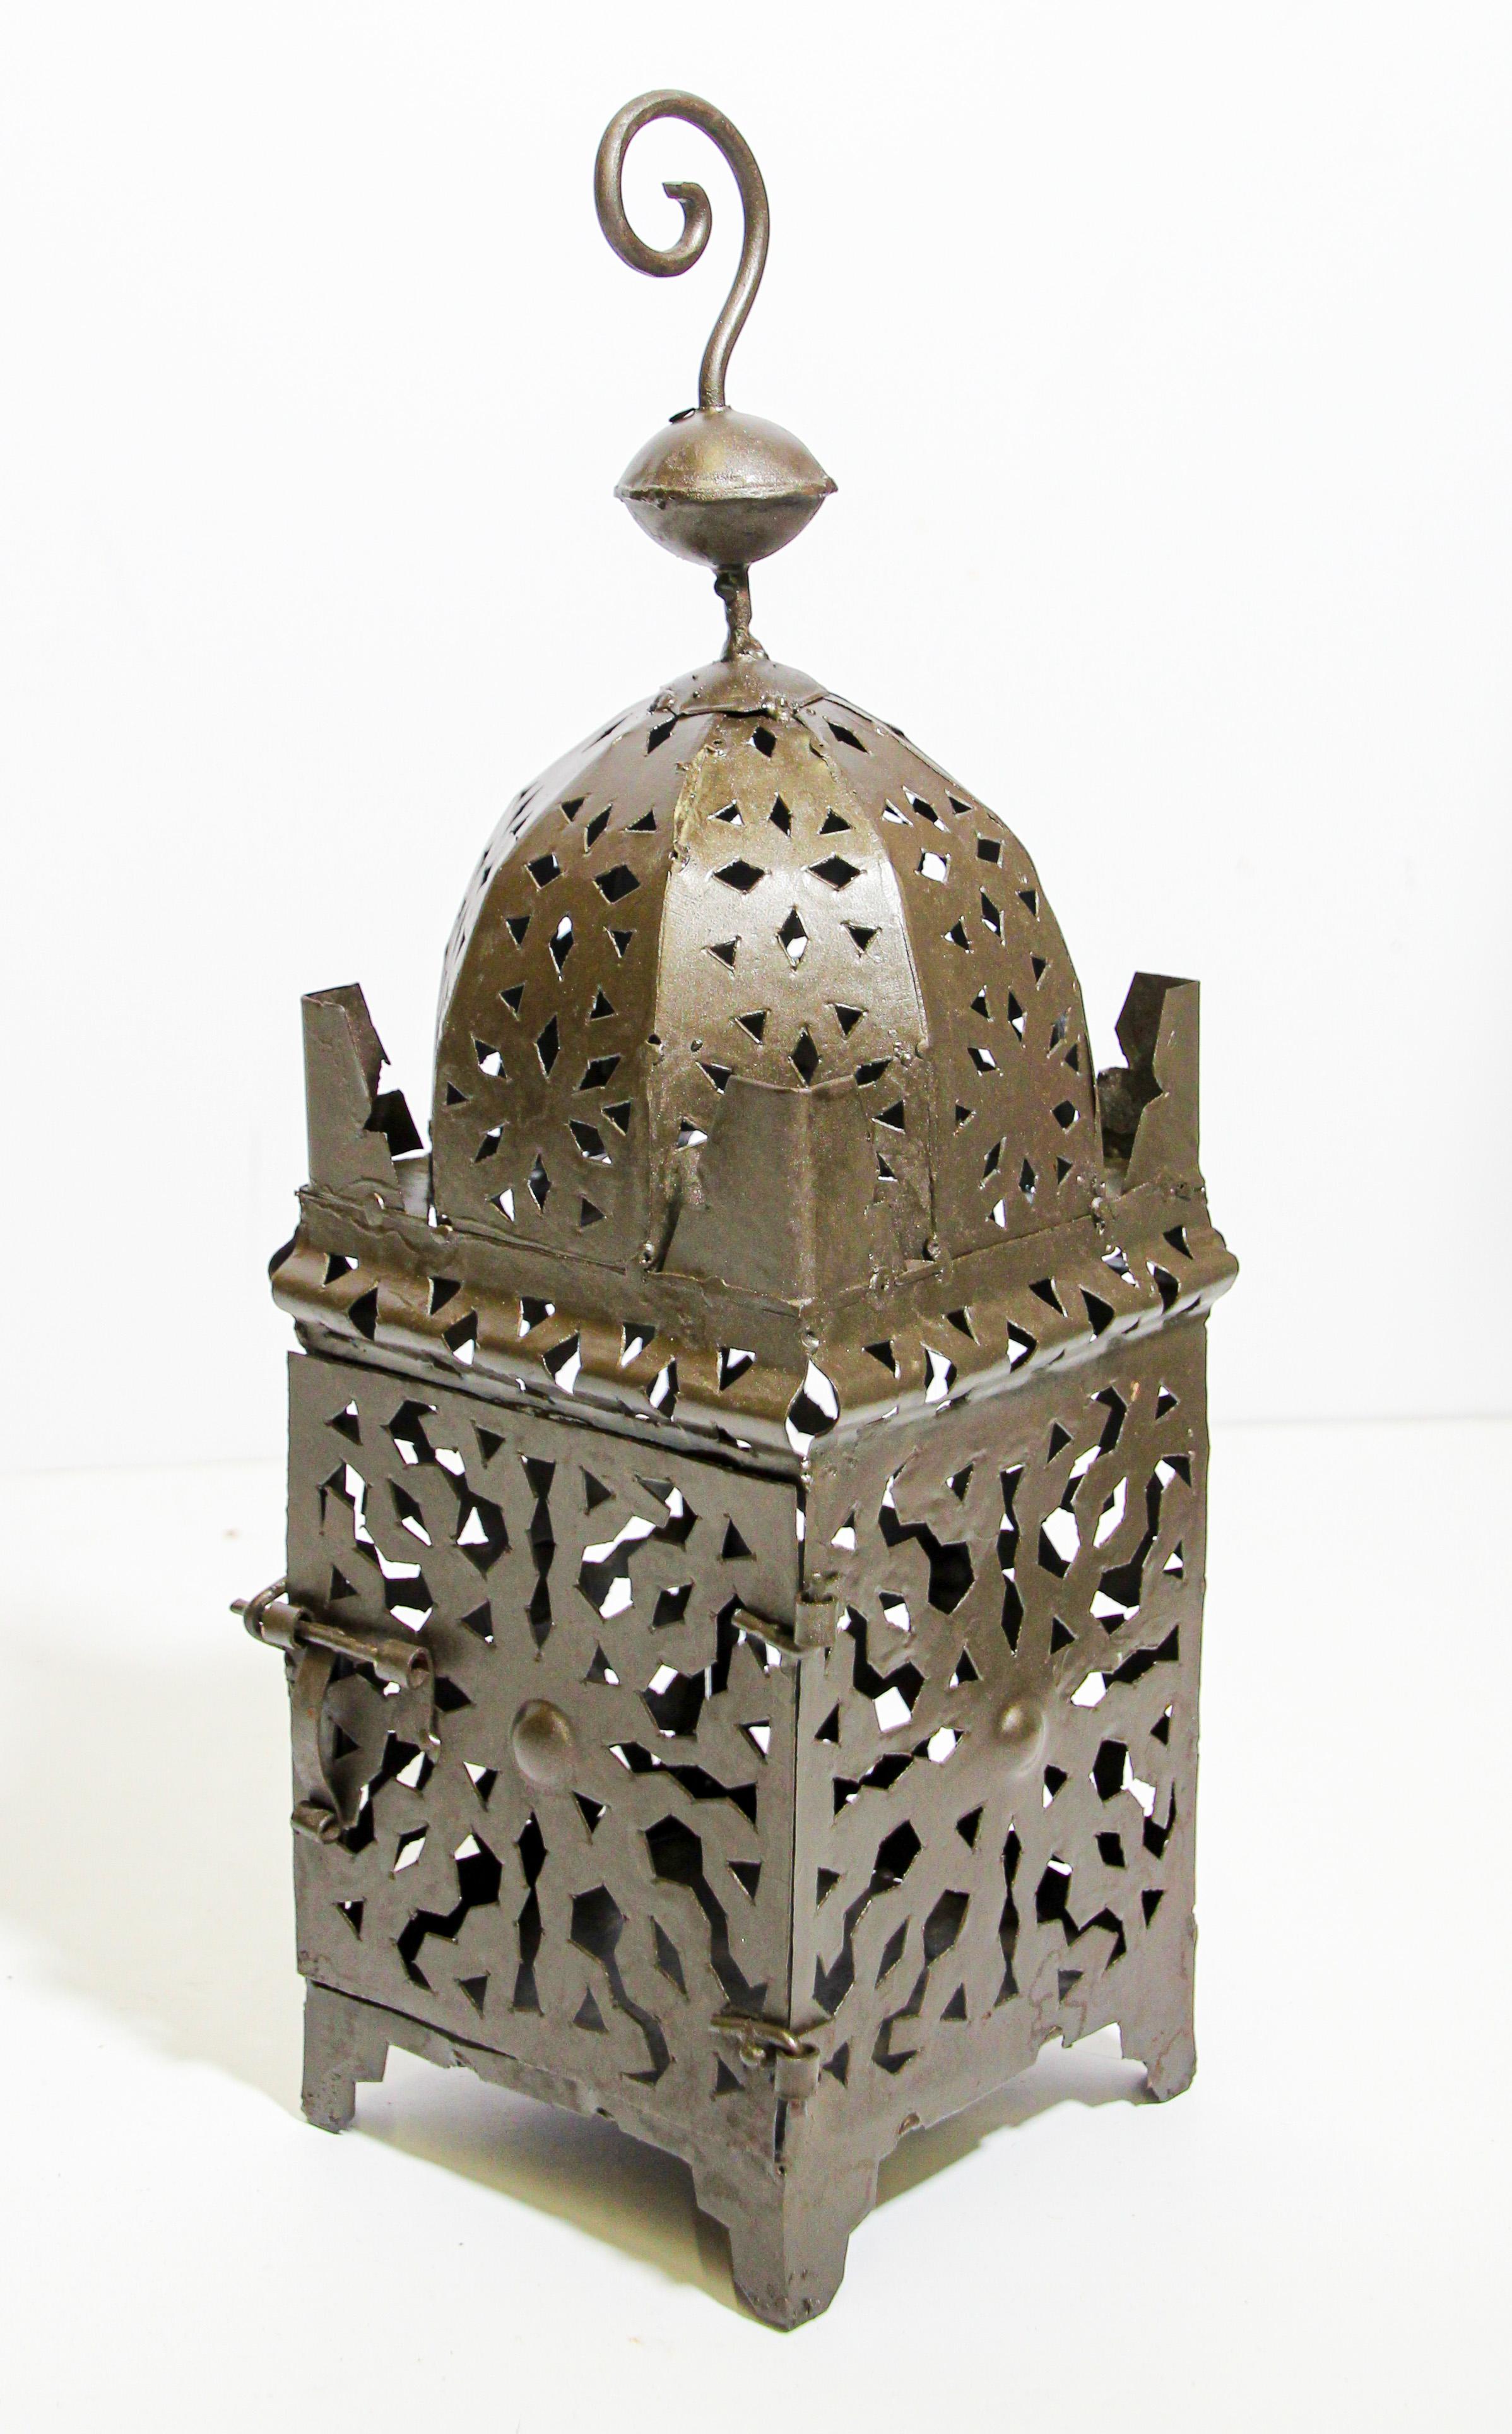 Lanterne de bougie marocaine en métal mauresque avec un travail de métal ouvert Moorish design.
Lampe à bougie ouragan fabriquée à la main au Maroc par des artisans, métal taillé et martelé à la main avec un design mauresque, ouverte à l'avant pour